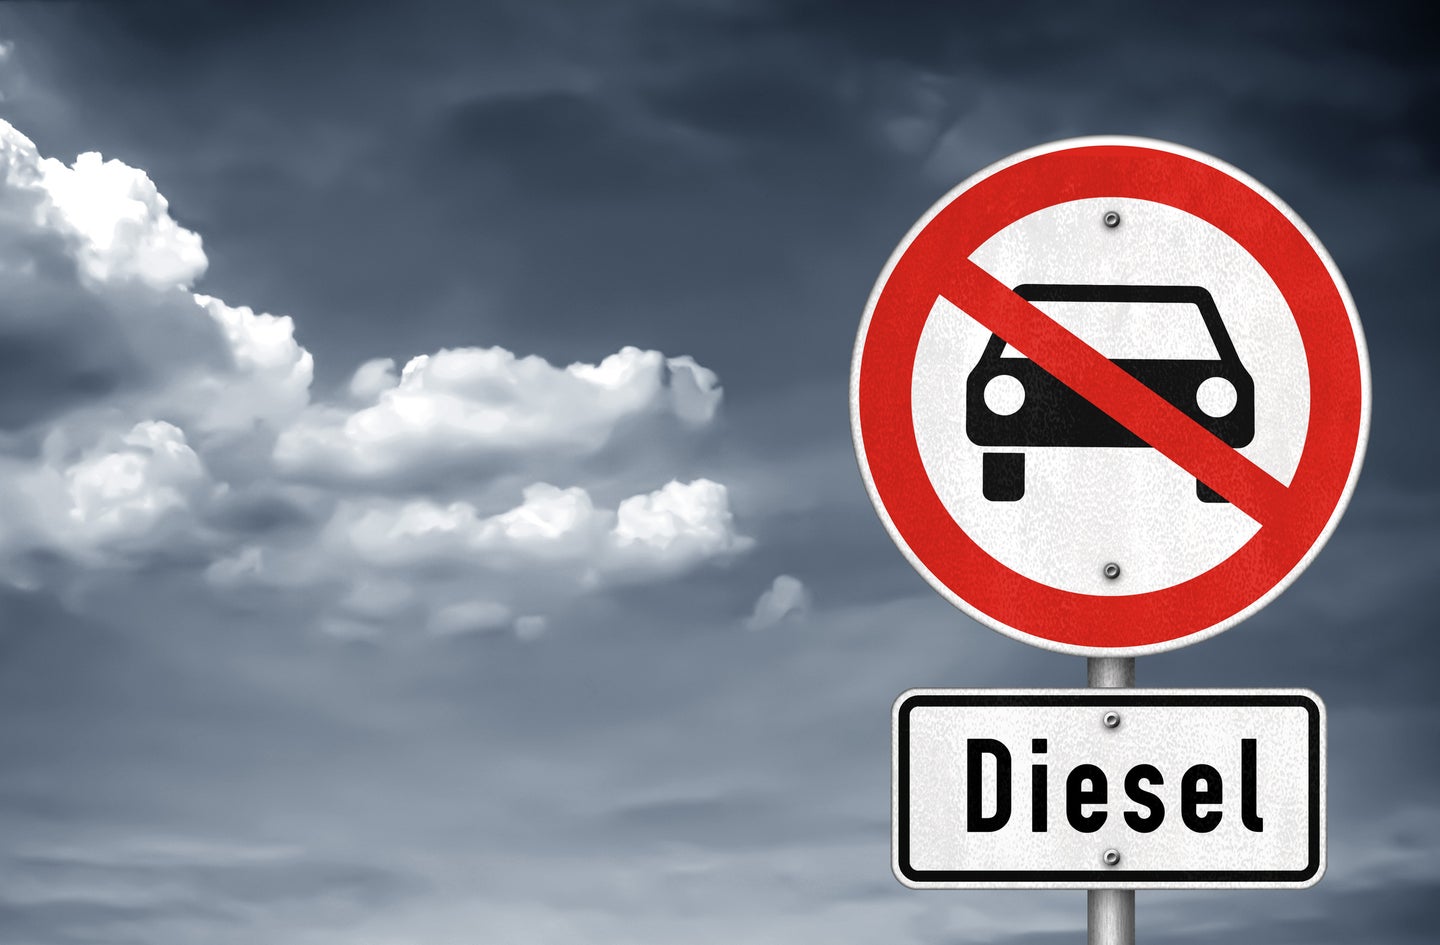 Diesel gate - emission scandal